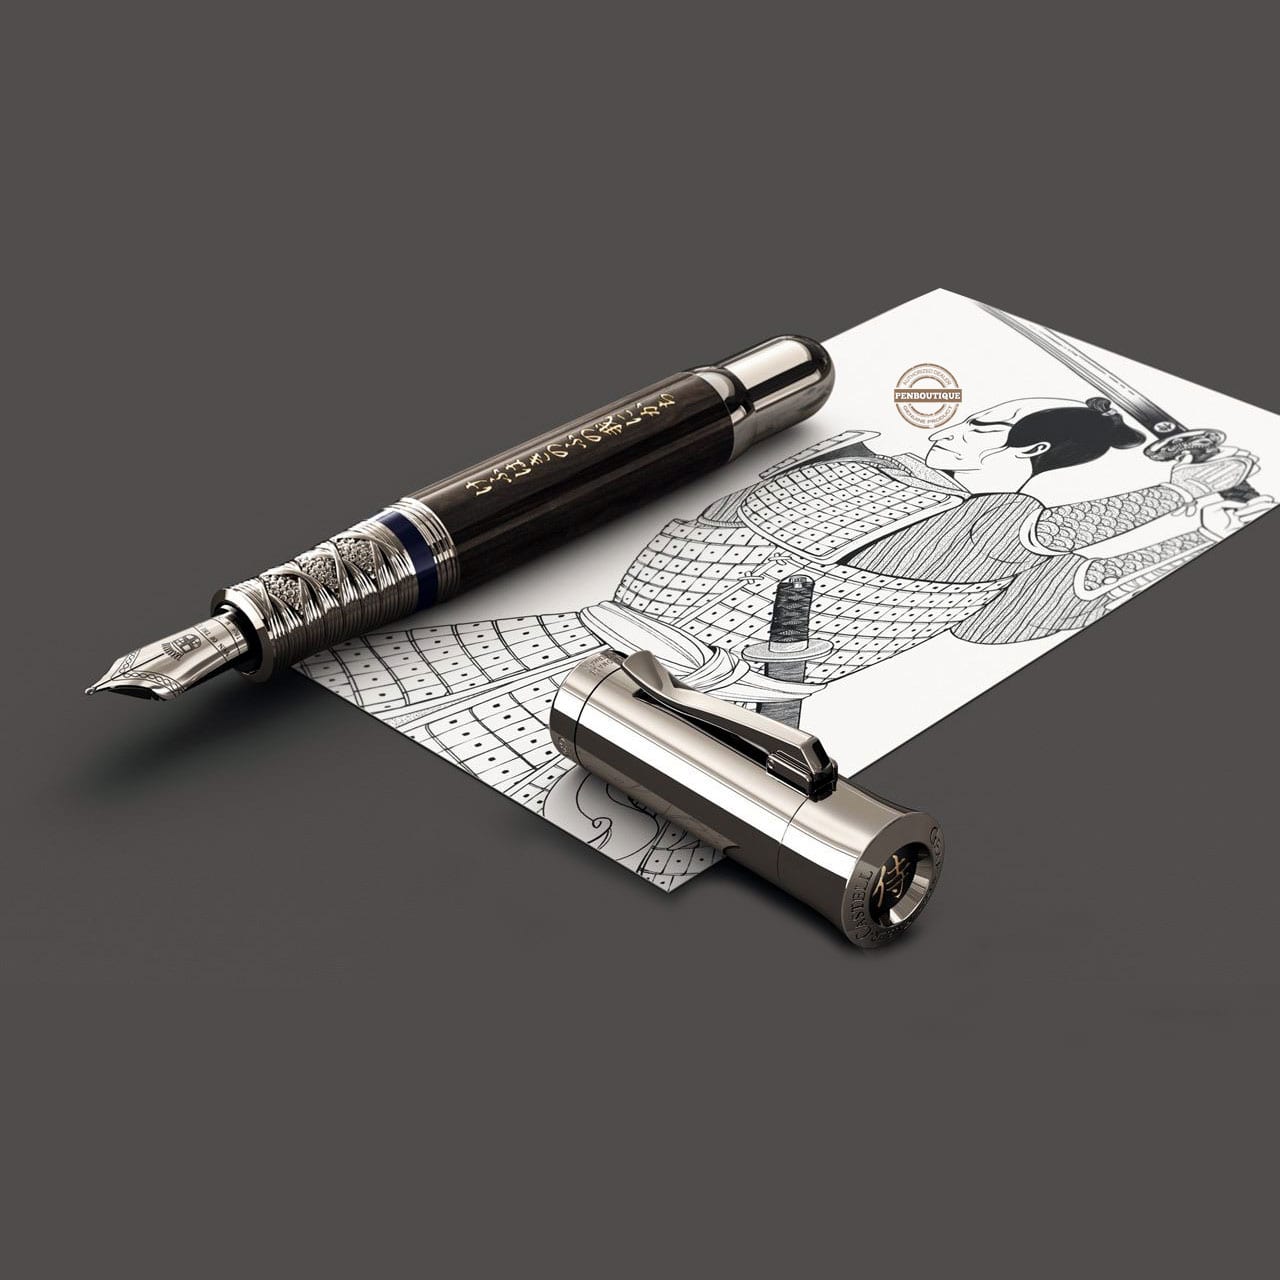 Graf Von Faber-Castell Pen of the Year 2023 Fountain Pen - Ancient Egy -  Pen Boutique Ltd